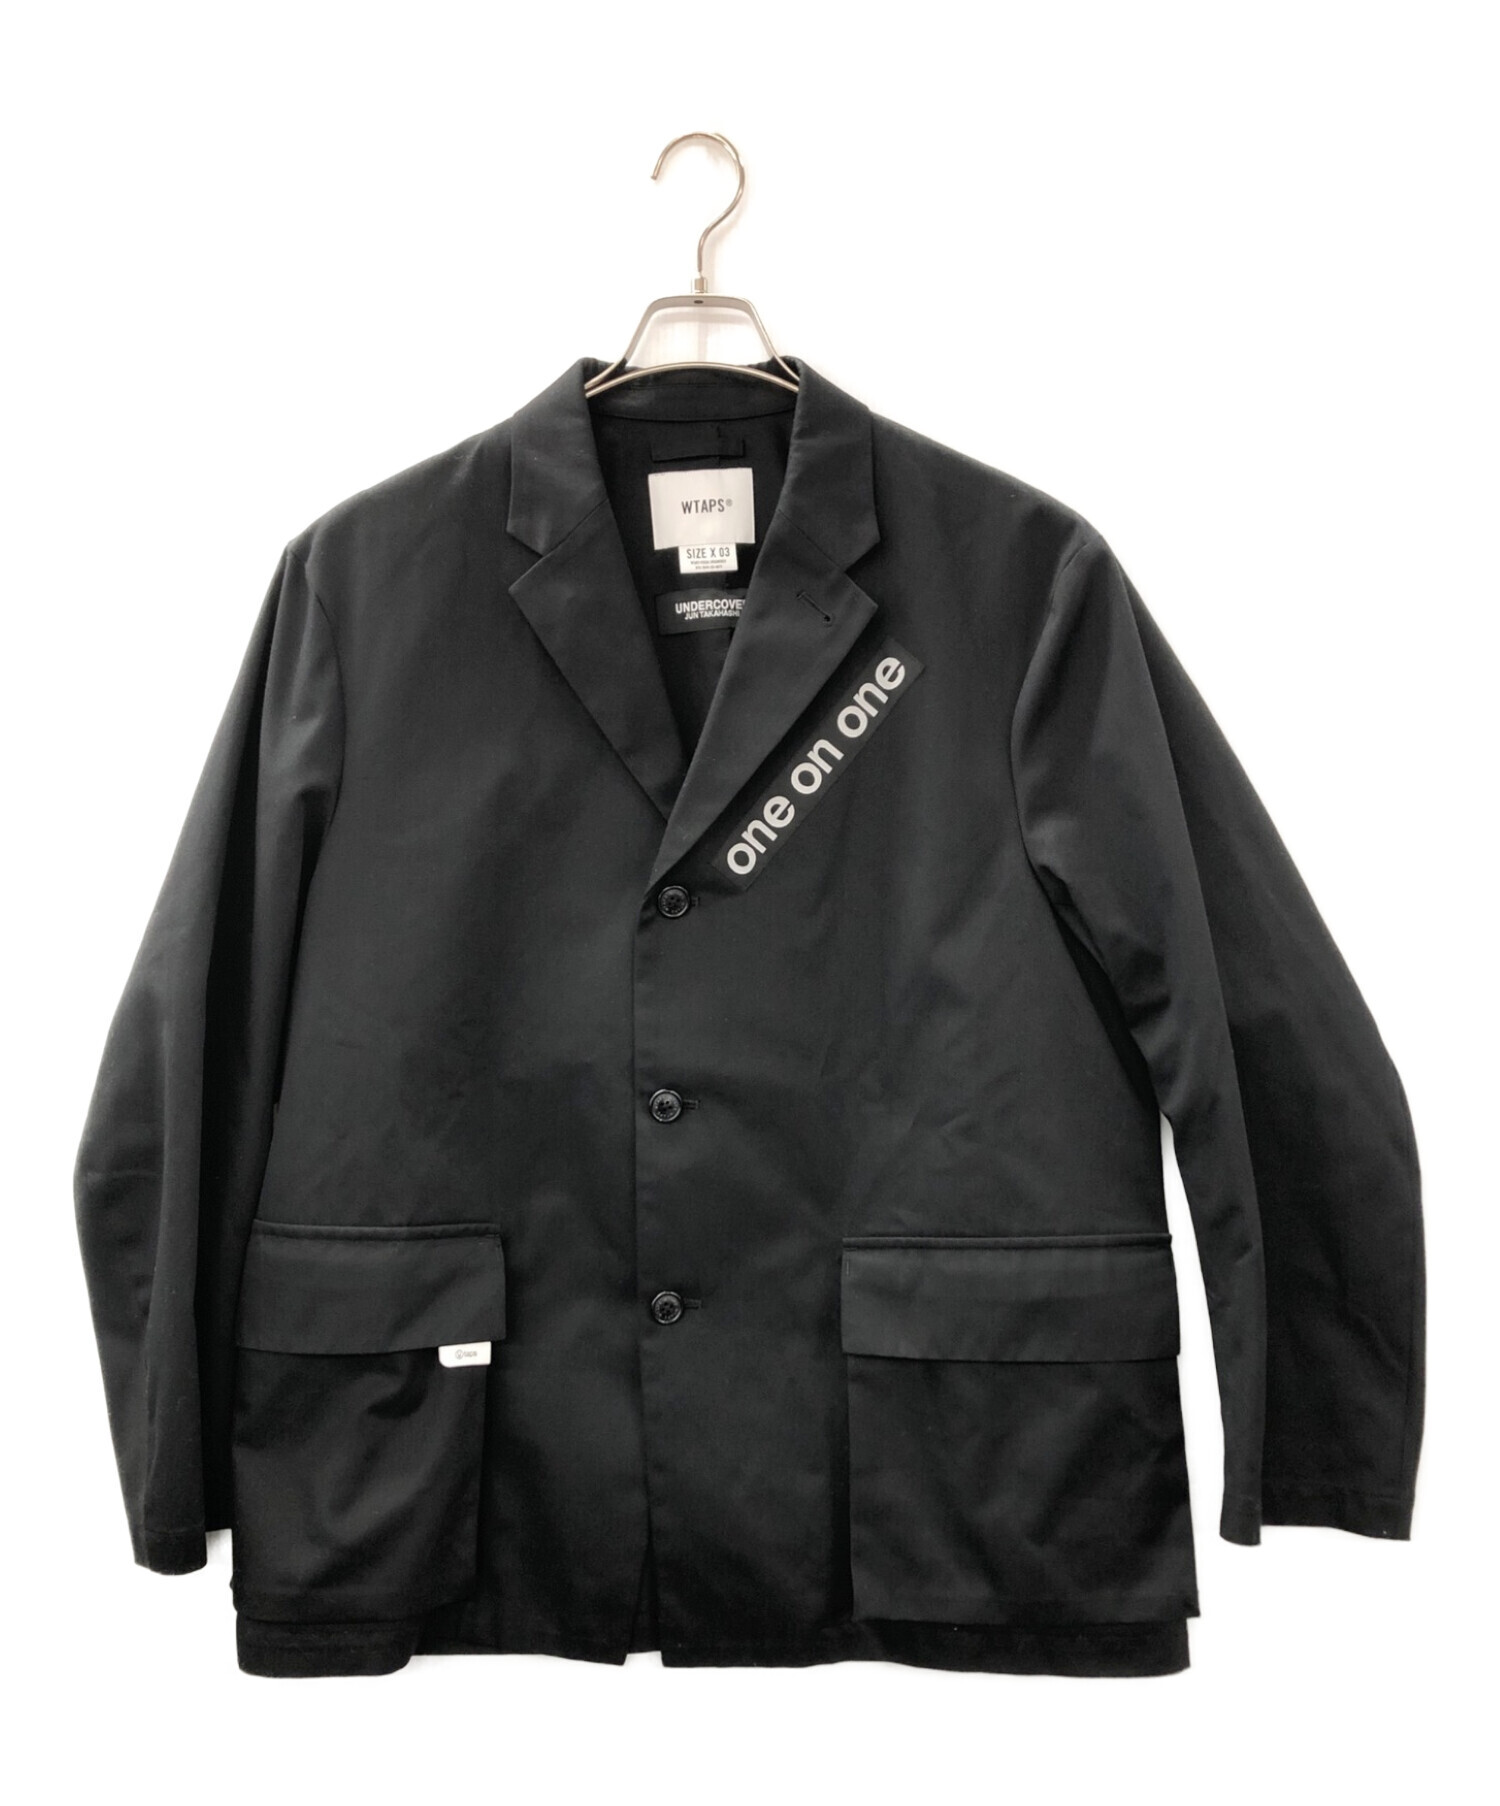 UNDERCOVER (アンダーカバー) WTAPS (ダブルタップス) テーラードジャケット ブラック サイズ:L